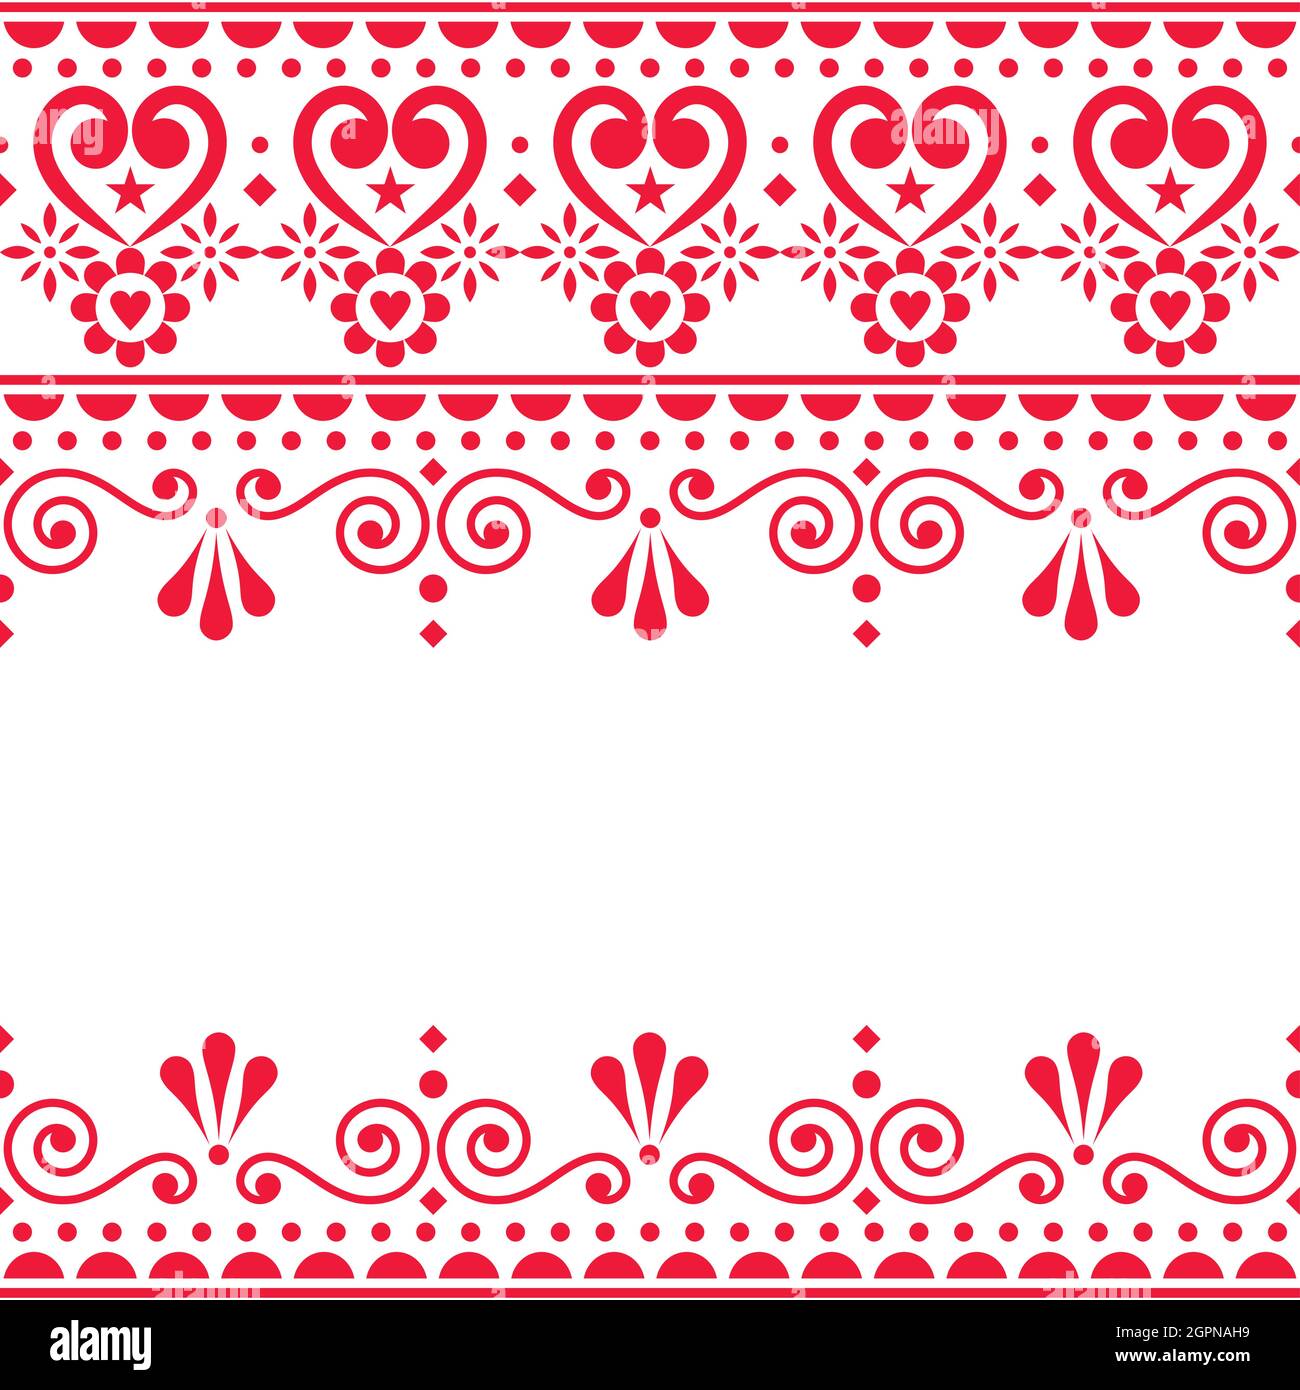 Biglietto d'auguri vettoriale scandinavo o textle, stampa in tessuto - tradizionale ricamo senza cuciture folk art design con fiori e girls Illustrazione Vettoriale